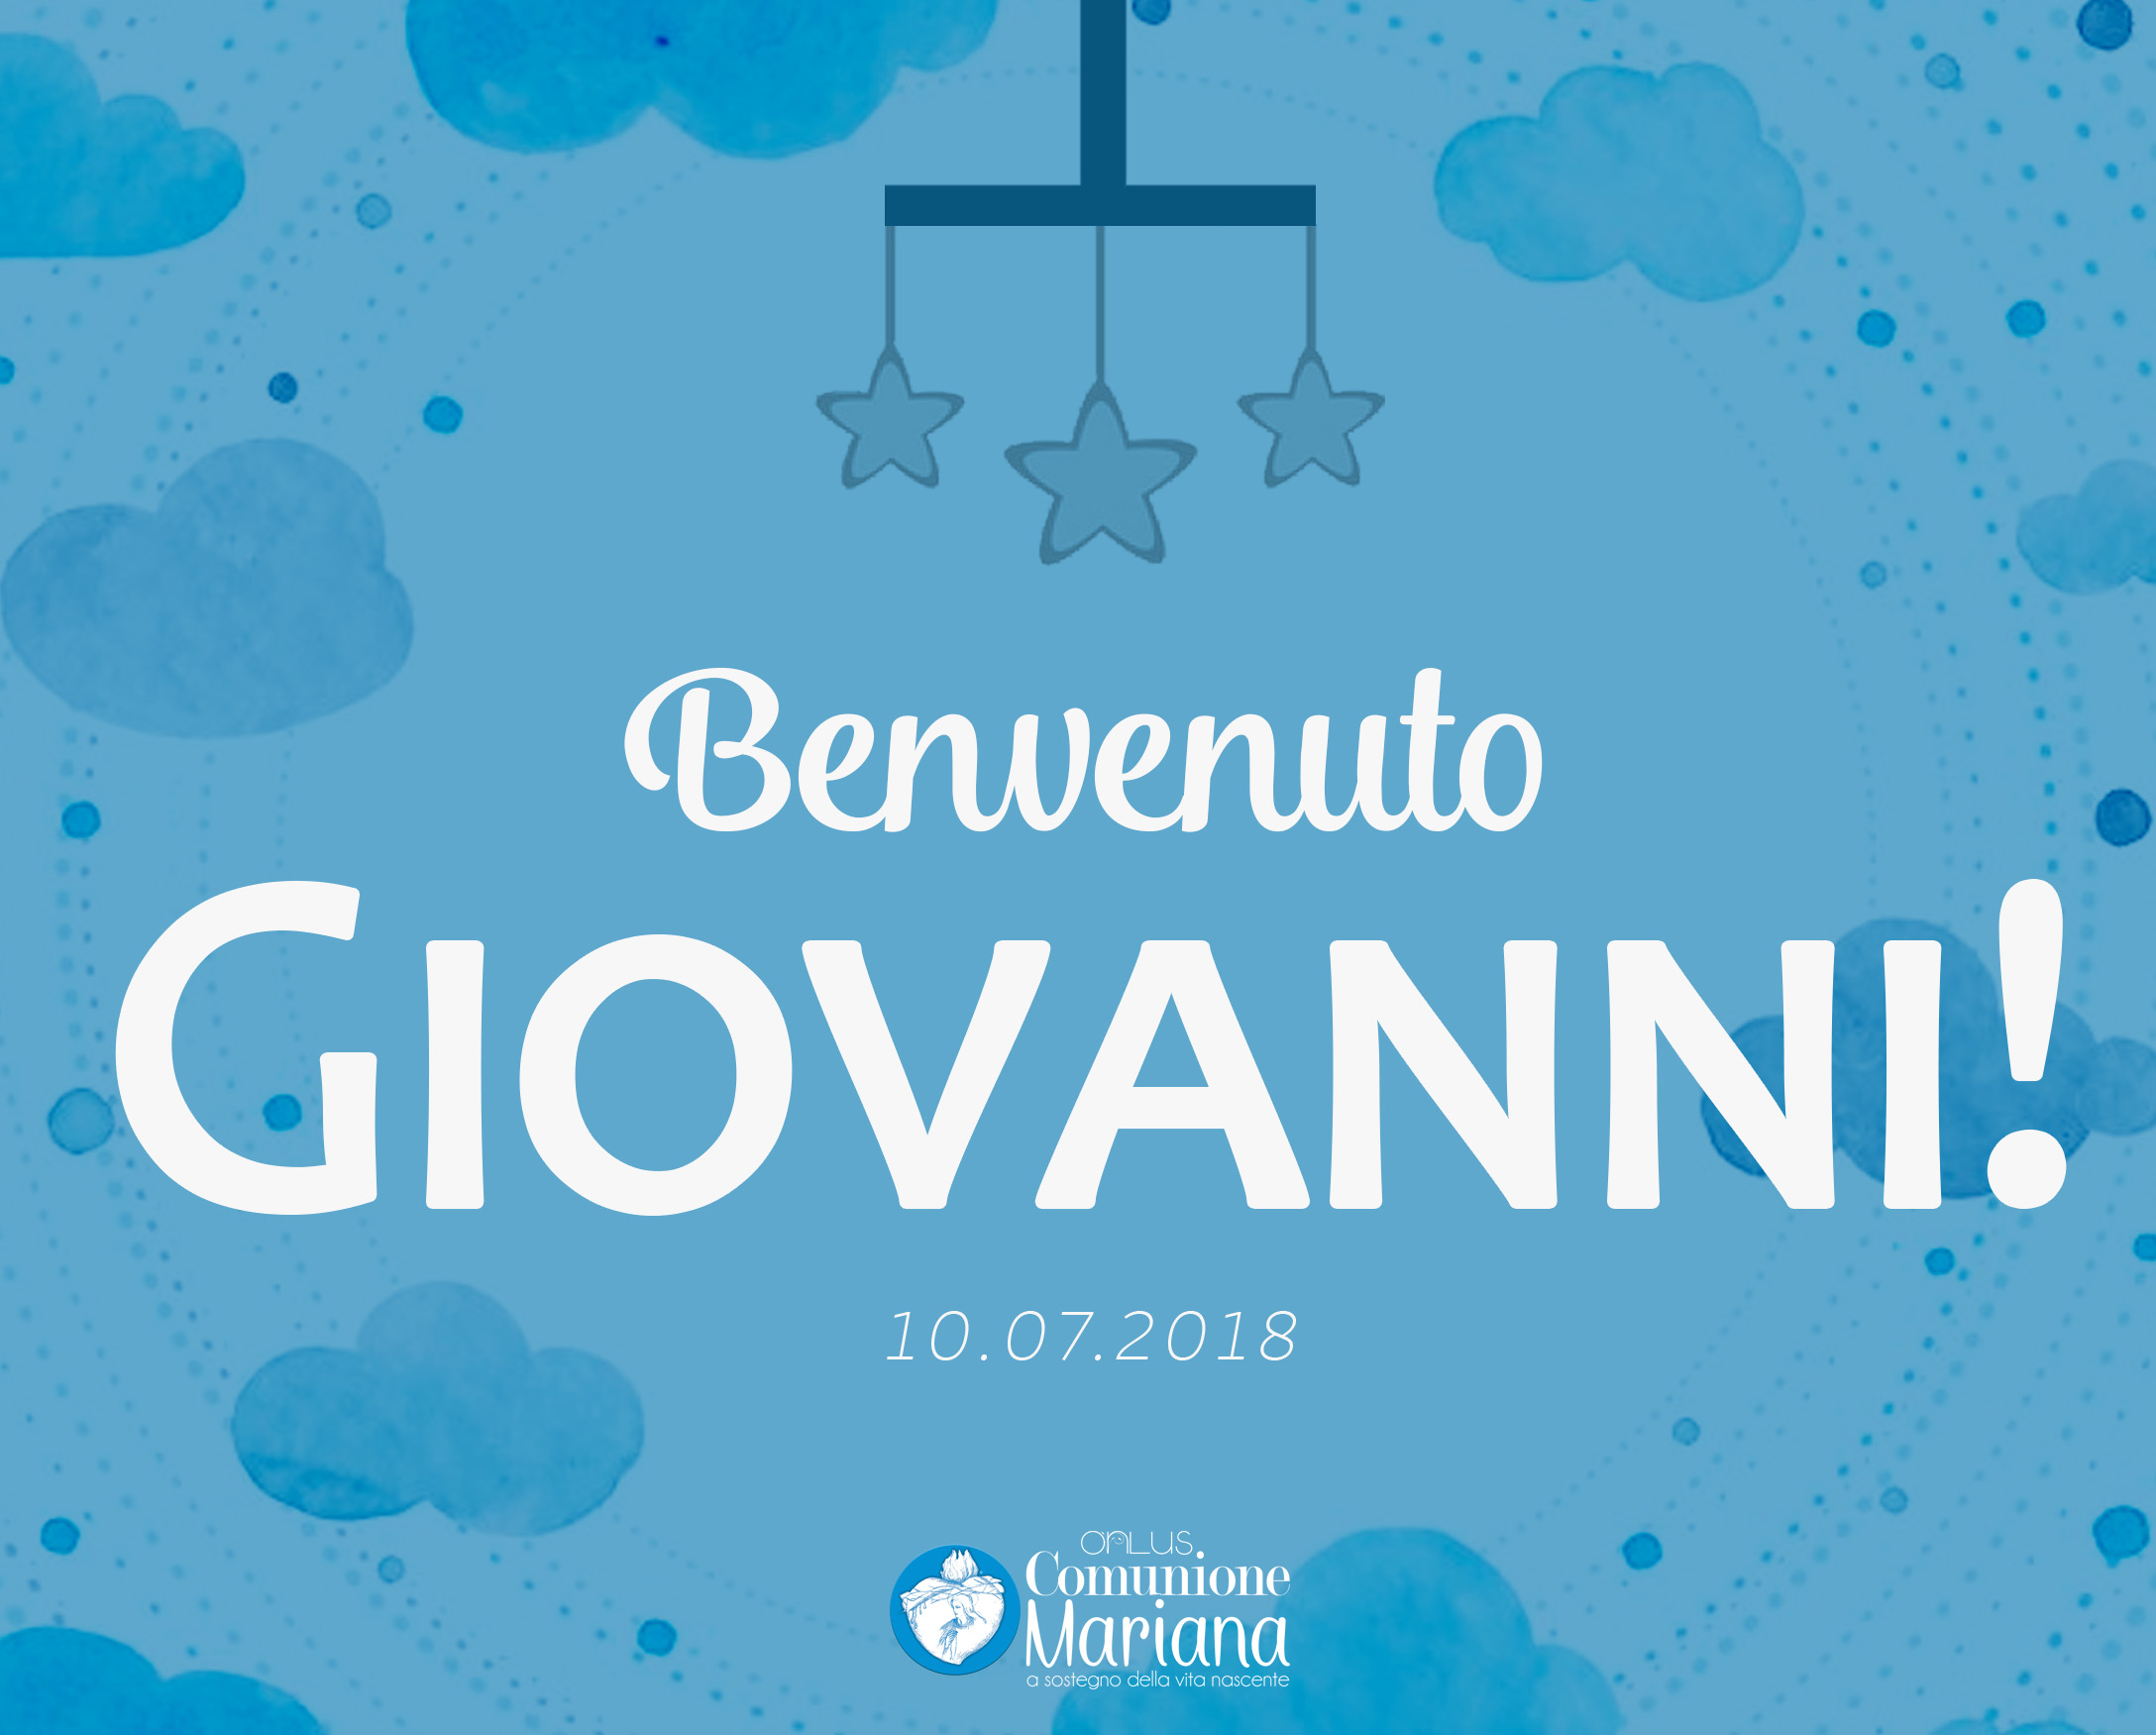 19. Giovanni